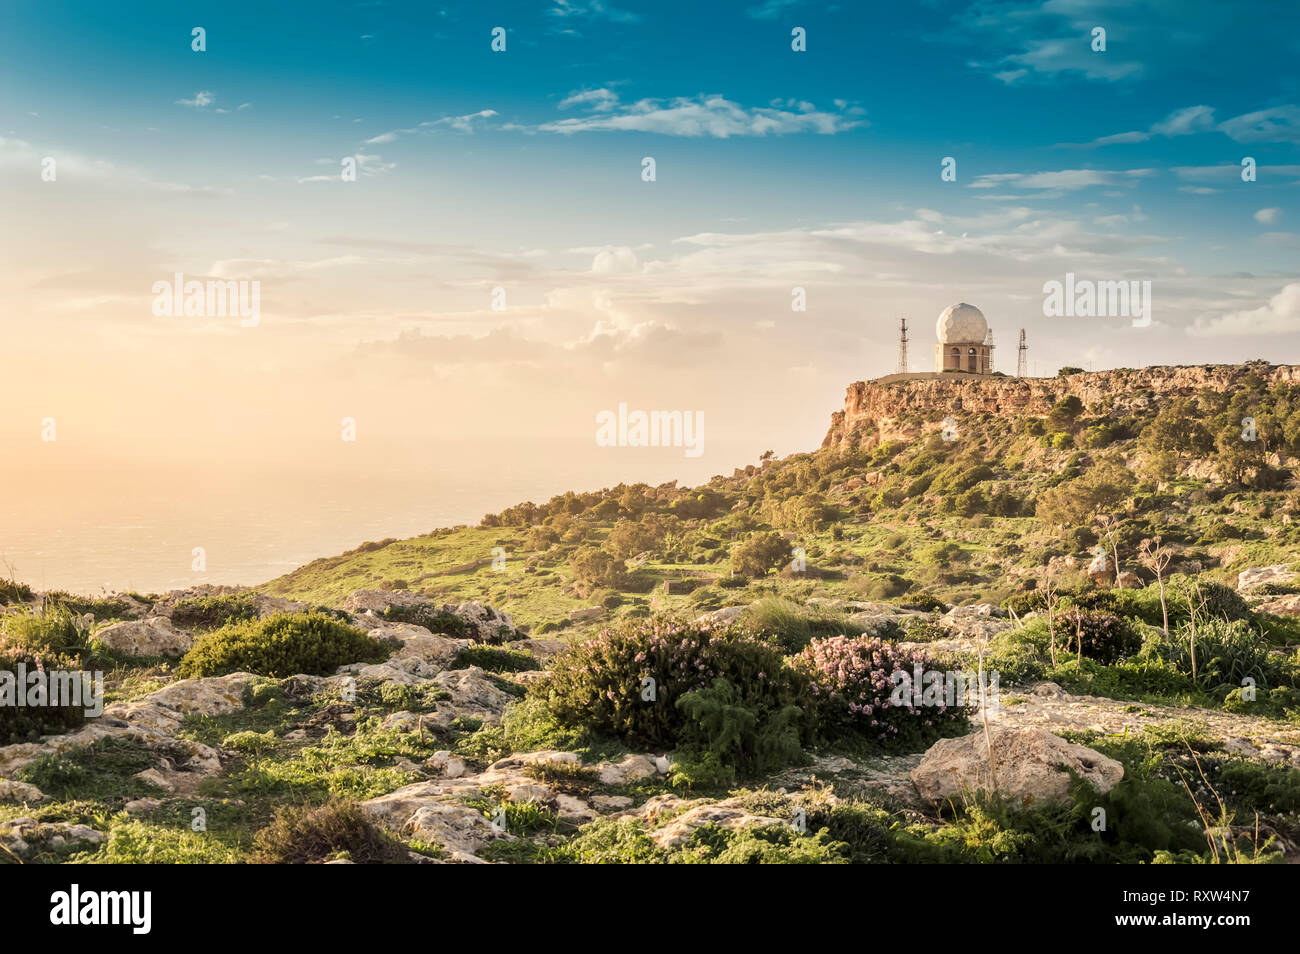 Dingli Cliffs, Malta: Panoramastraße mit einem romantischen Blick über Dingli Cliffs und Luftfahrt Radar bei Sonnenuntergang Stockfoto